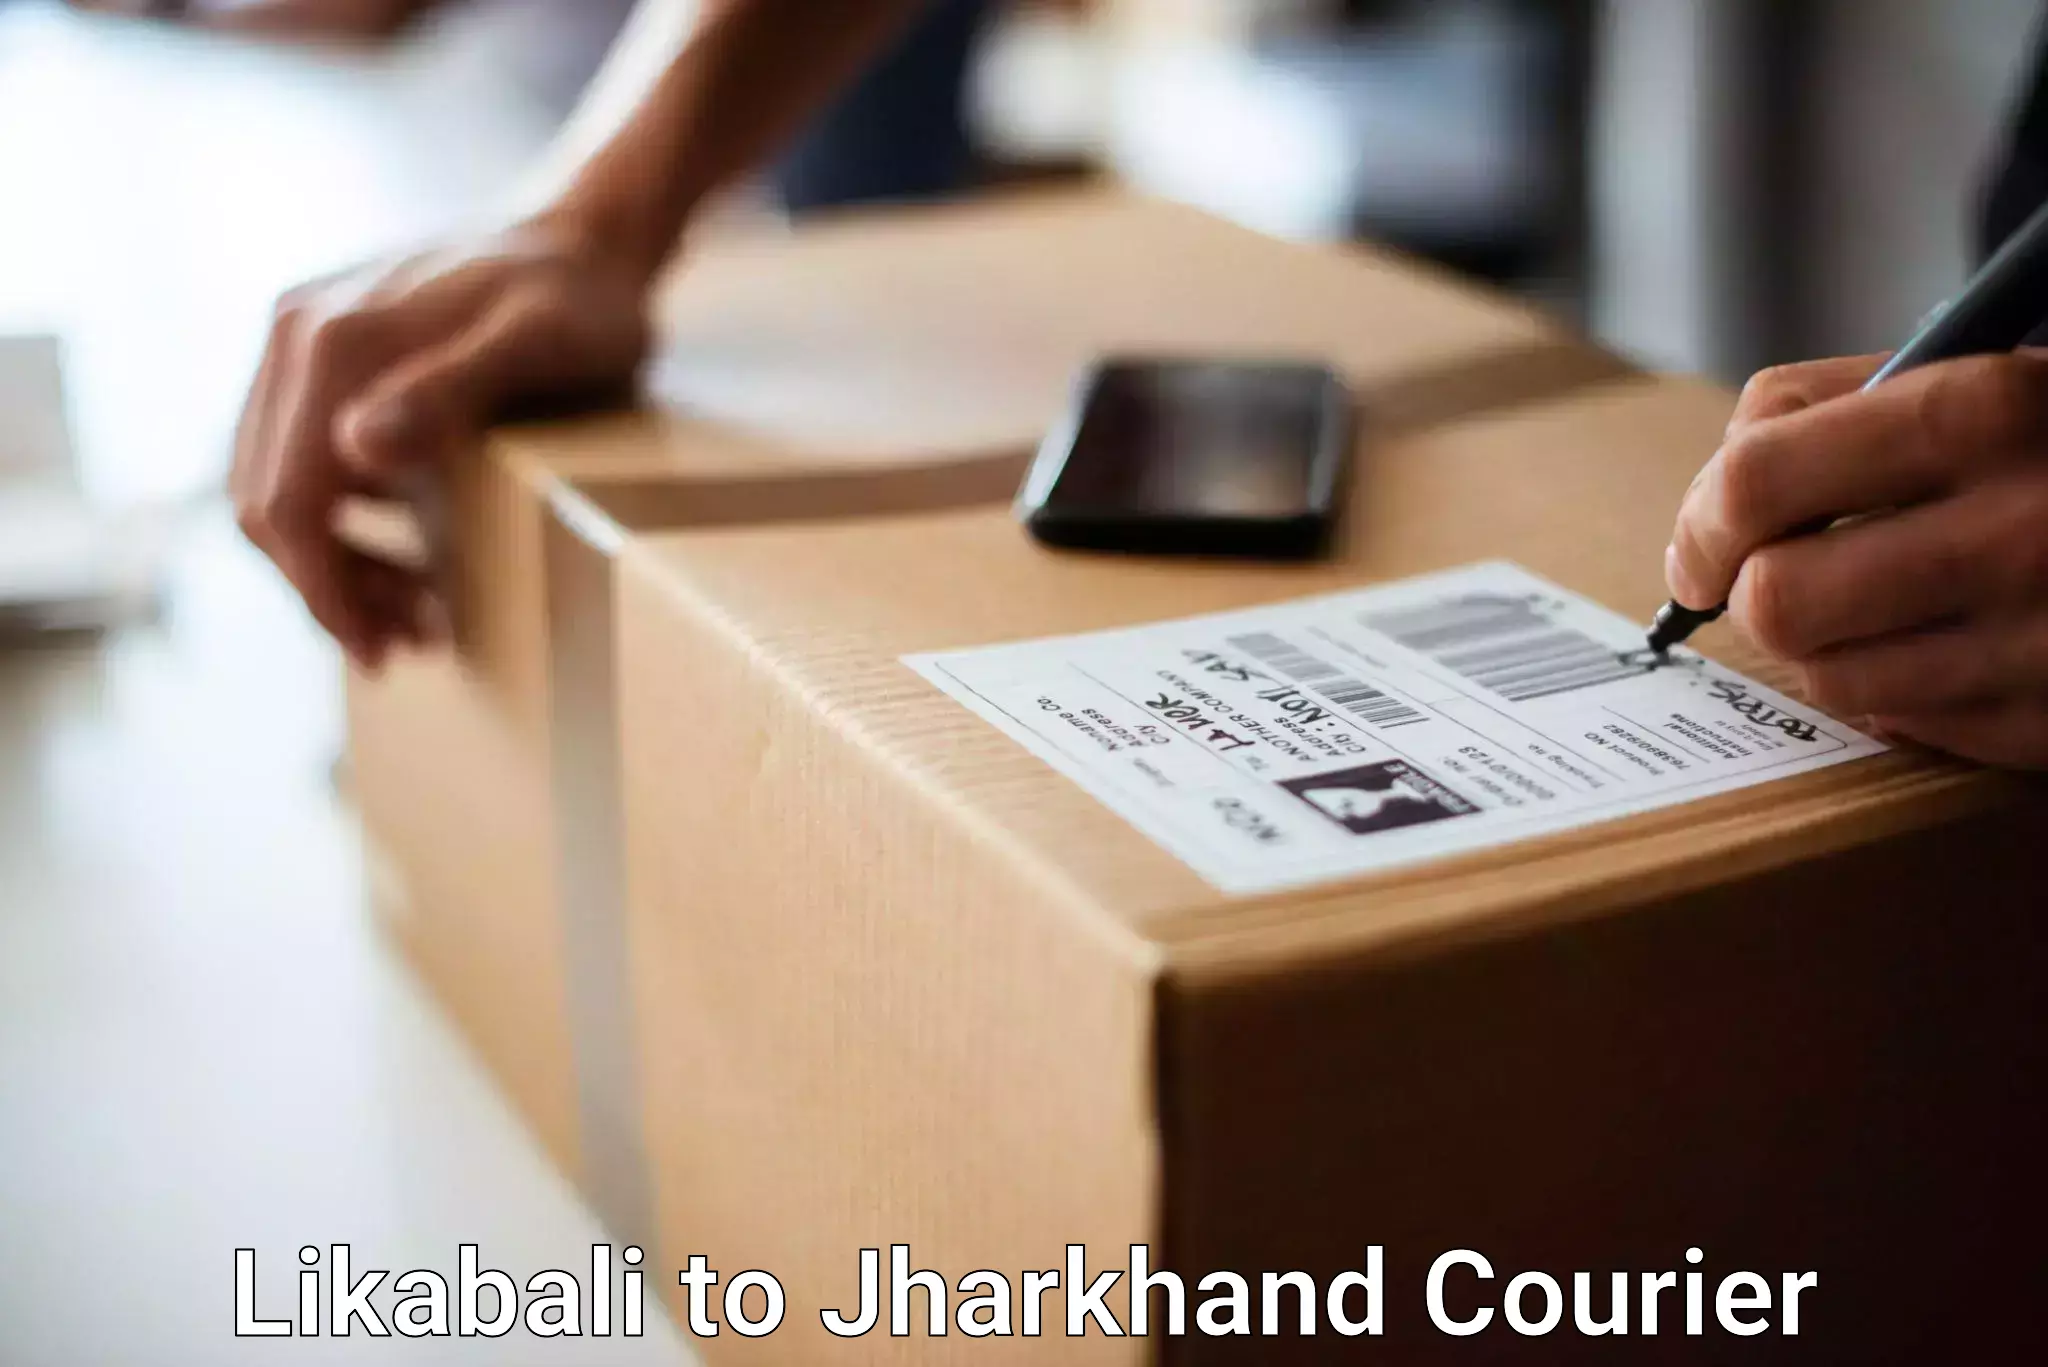 Luggage shipment tracking Likabali to Bero Ranchi